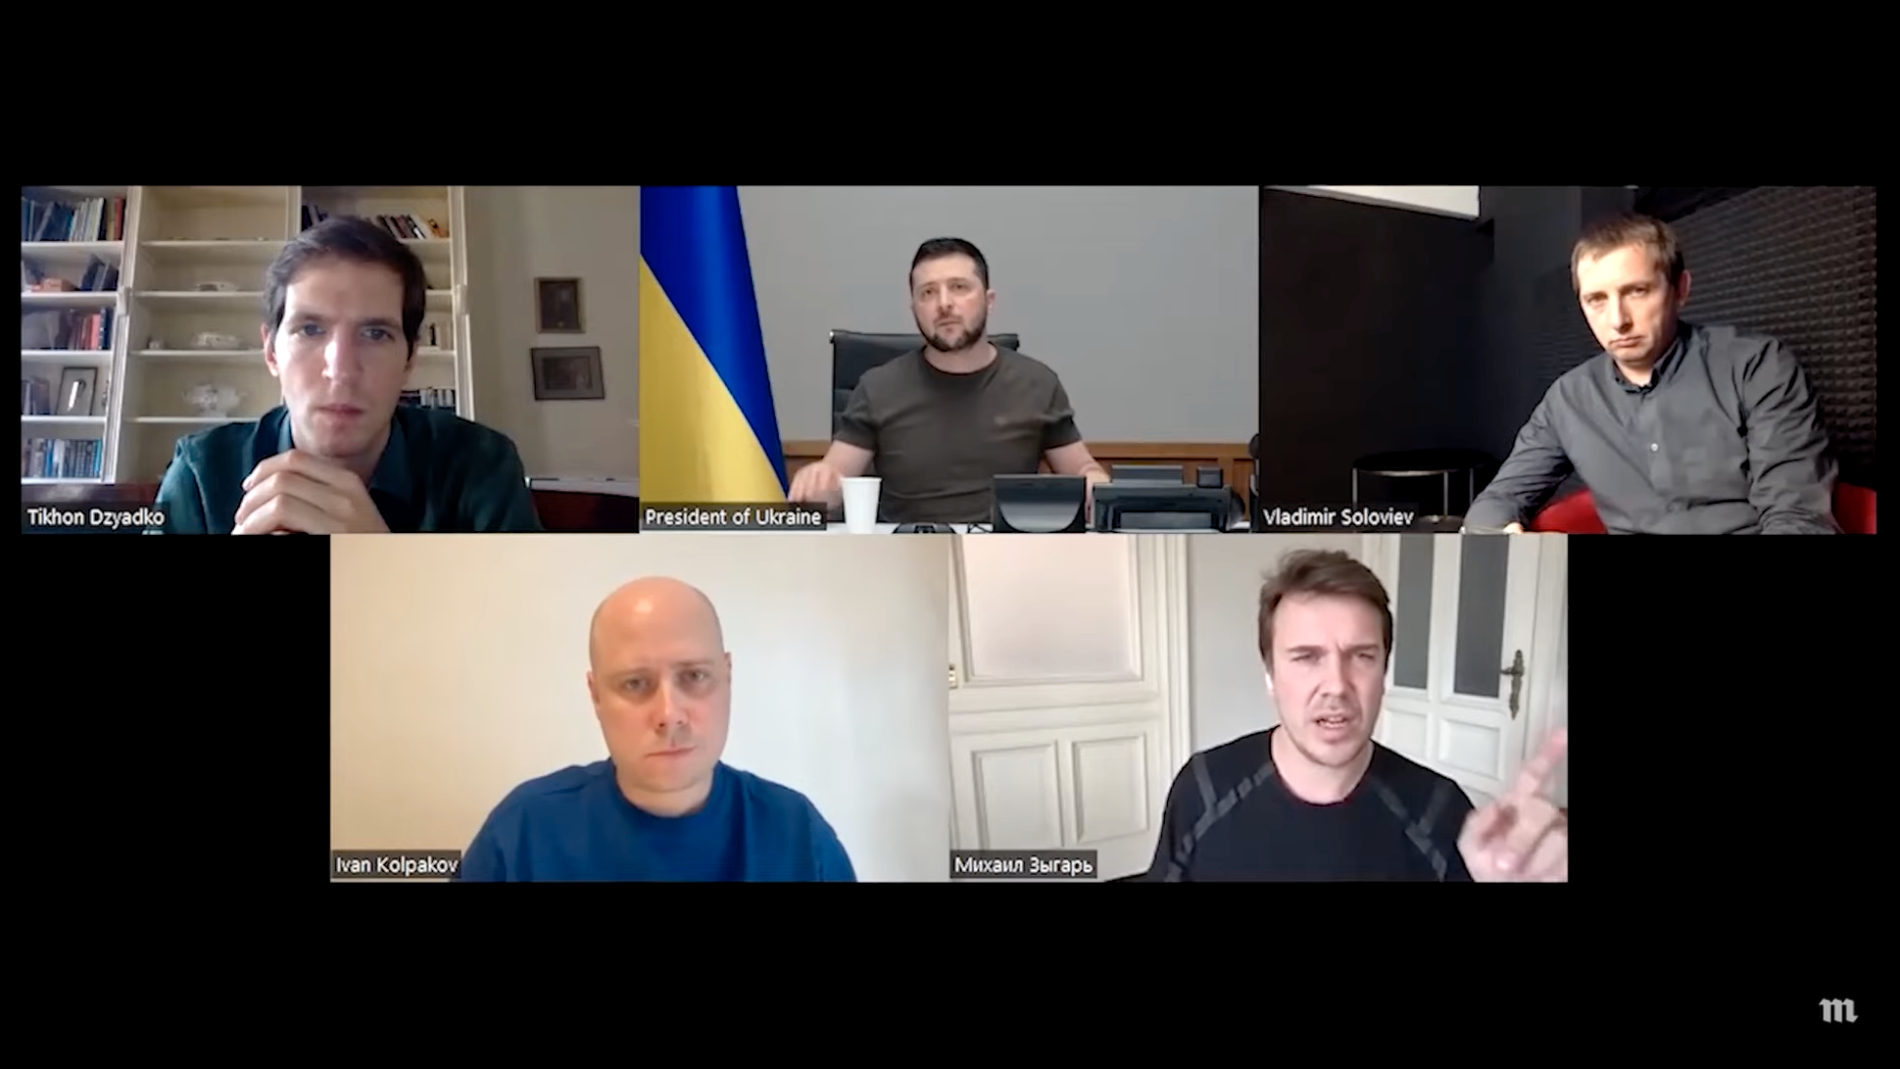 Videomötet mellan Zelenskyj och journalisterna.